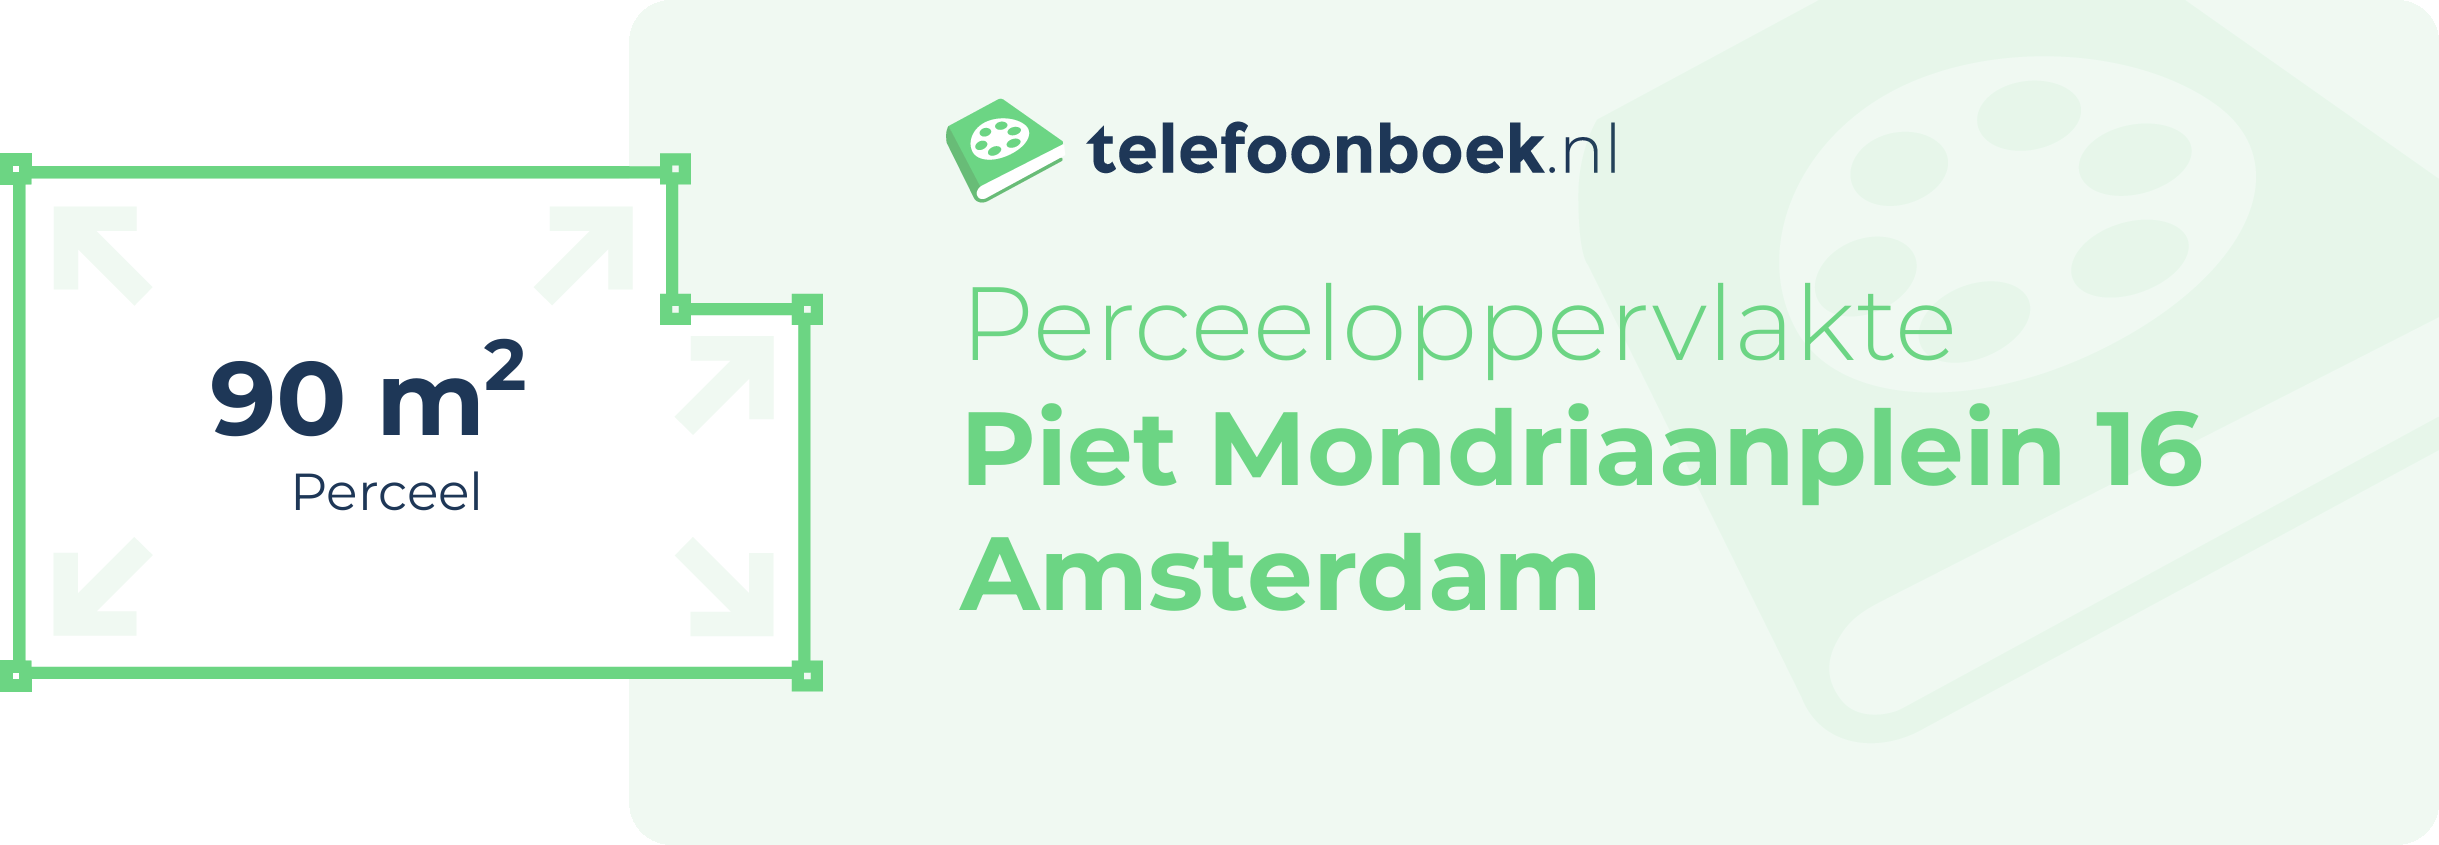 Perceeloppervlakte Piet Mondriaanplein 16 Amsterdam